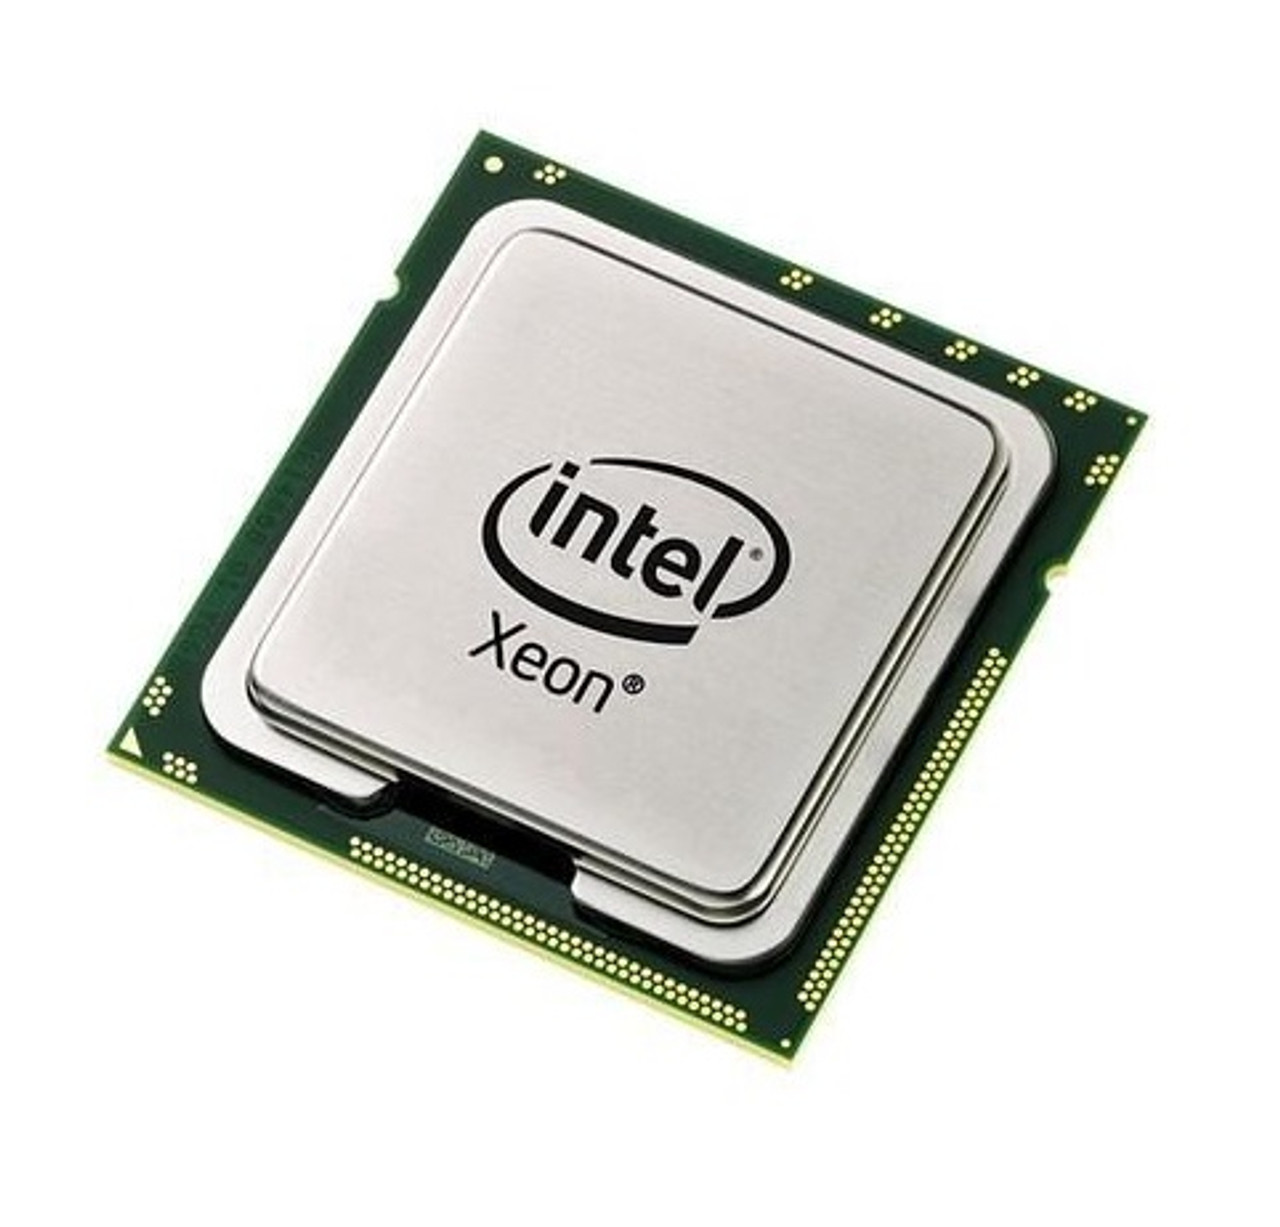 80602002712AA - Intel Xeon L5506 Quad Core 2.13GHz 4.80GT/s QPI 4MB L3 Cache Socket FCLGA1366 Processor